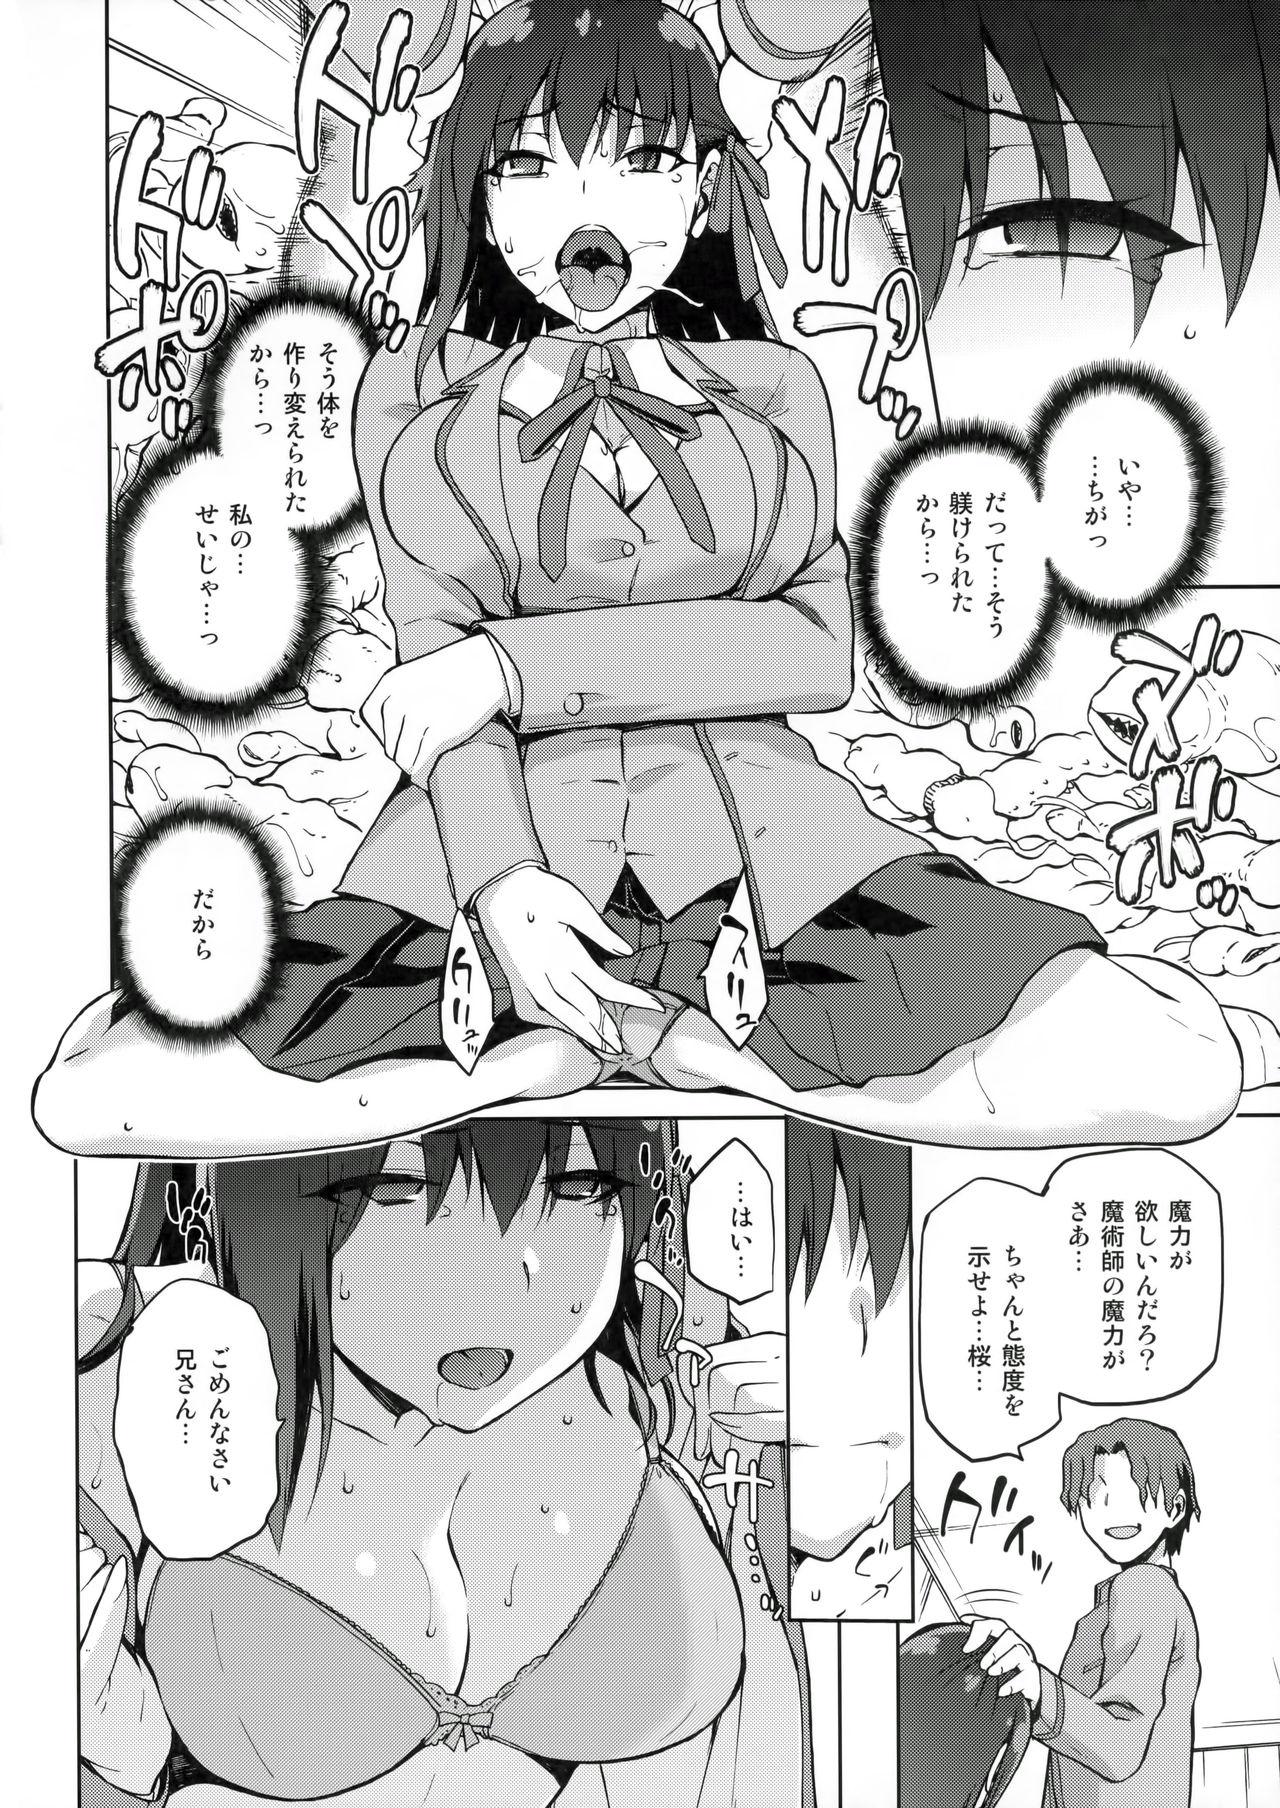 Dando Sakura Ori - Fate stay night Transvestite - Page 11